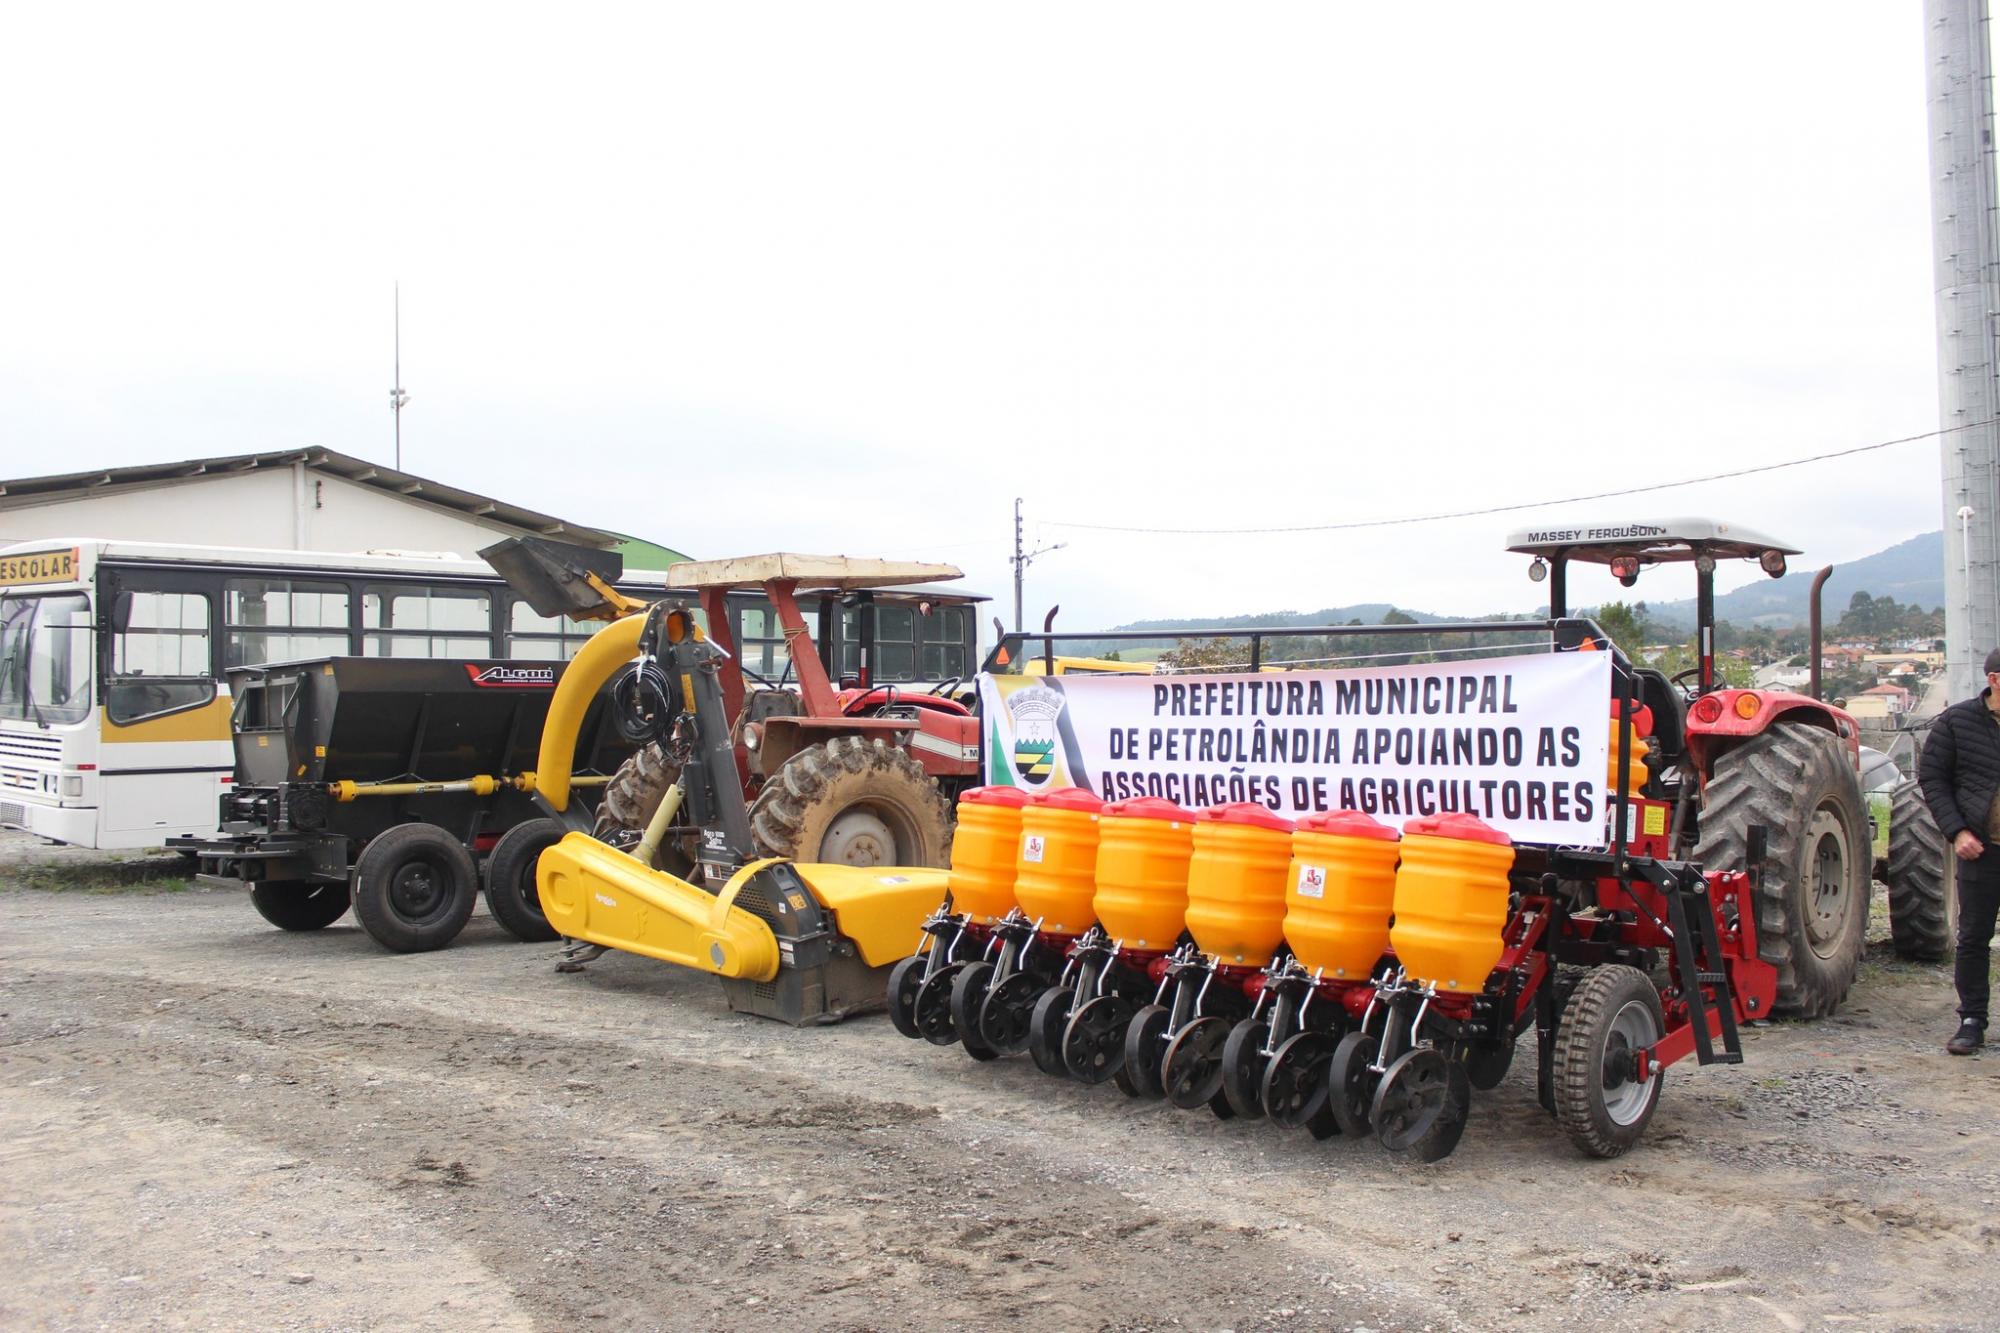 Associações de Agricultores de Petrolândia recebem equipamentos e máquinas agrícolas